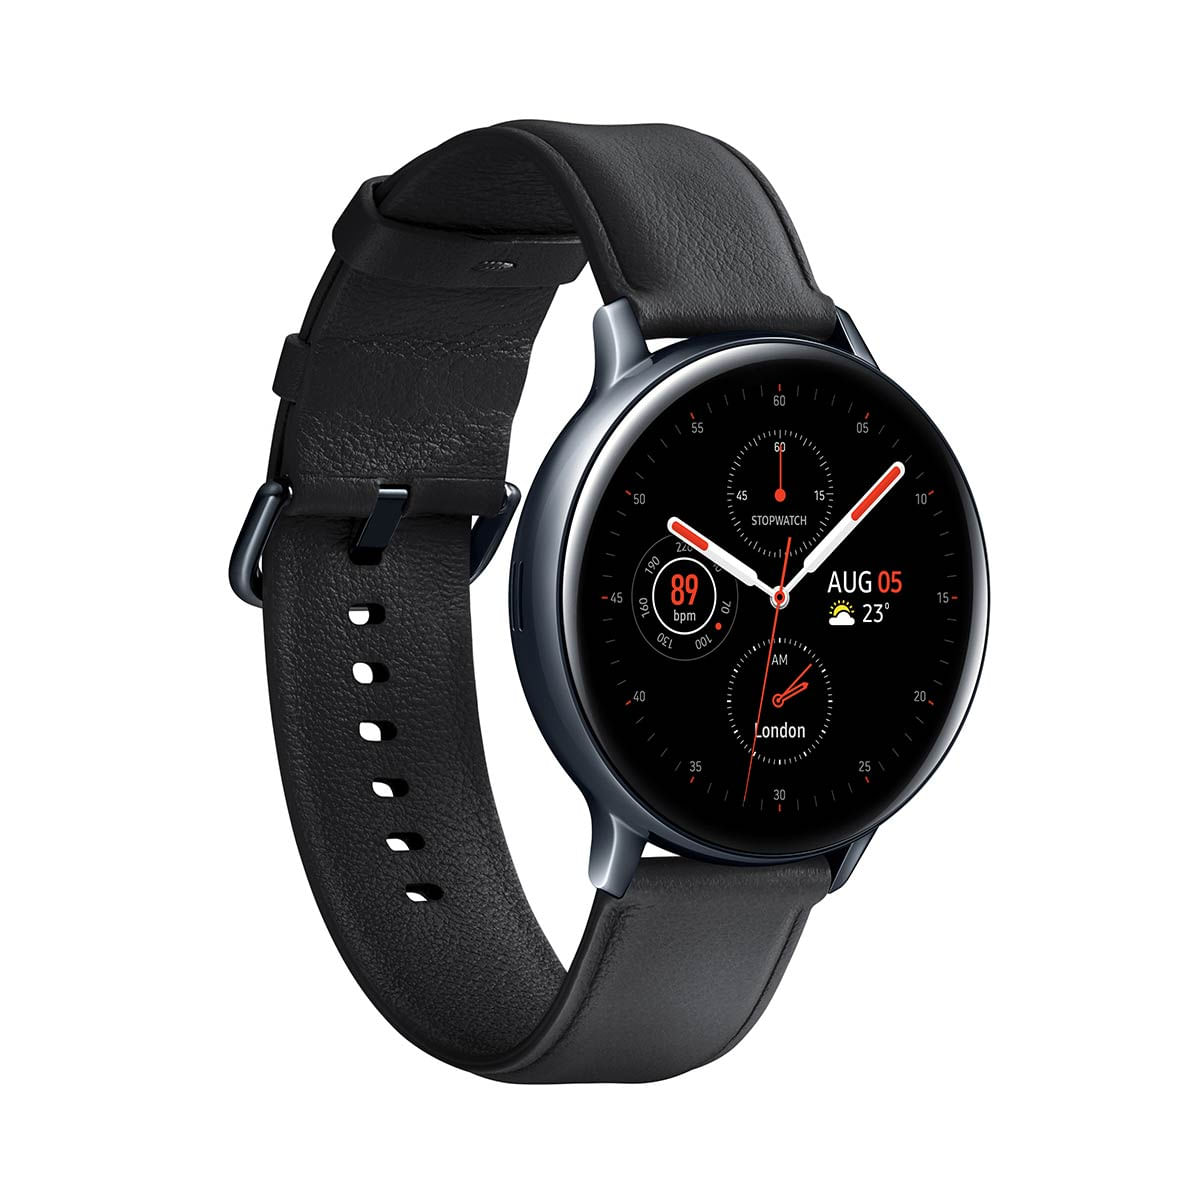 kit-smartwatch-samsung-2-pecas--galaxy-watch3-41mm-lte-prata---galaxy-active2-lte-44mm-preto-3.jpg